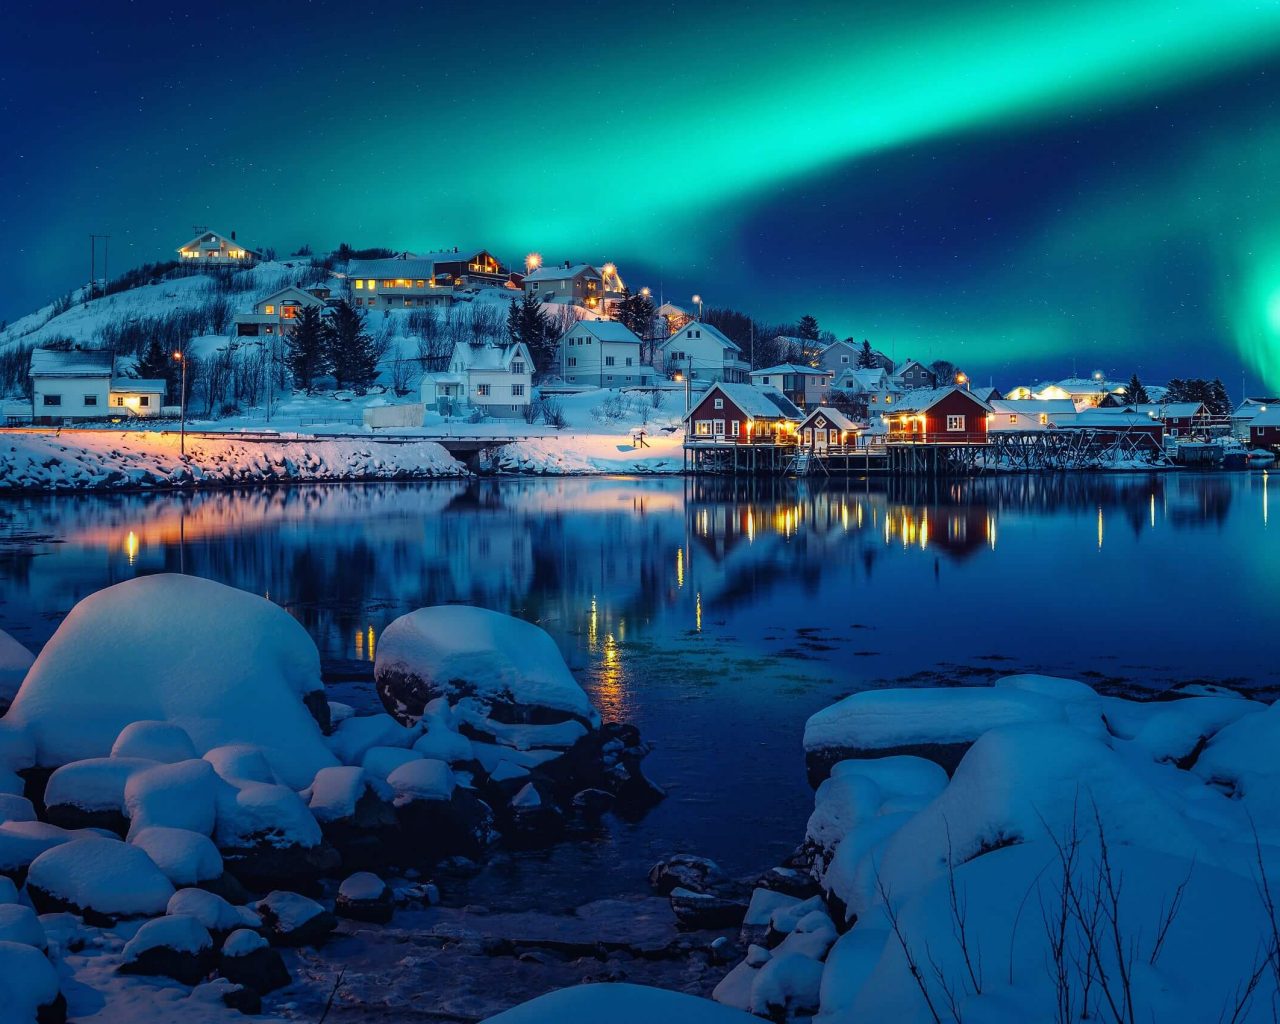 Foto escénica del pueblo pesquero de invierno con luces del norte